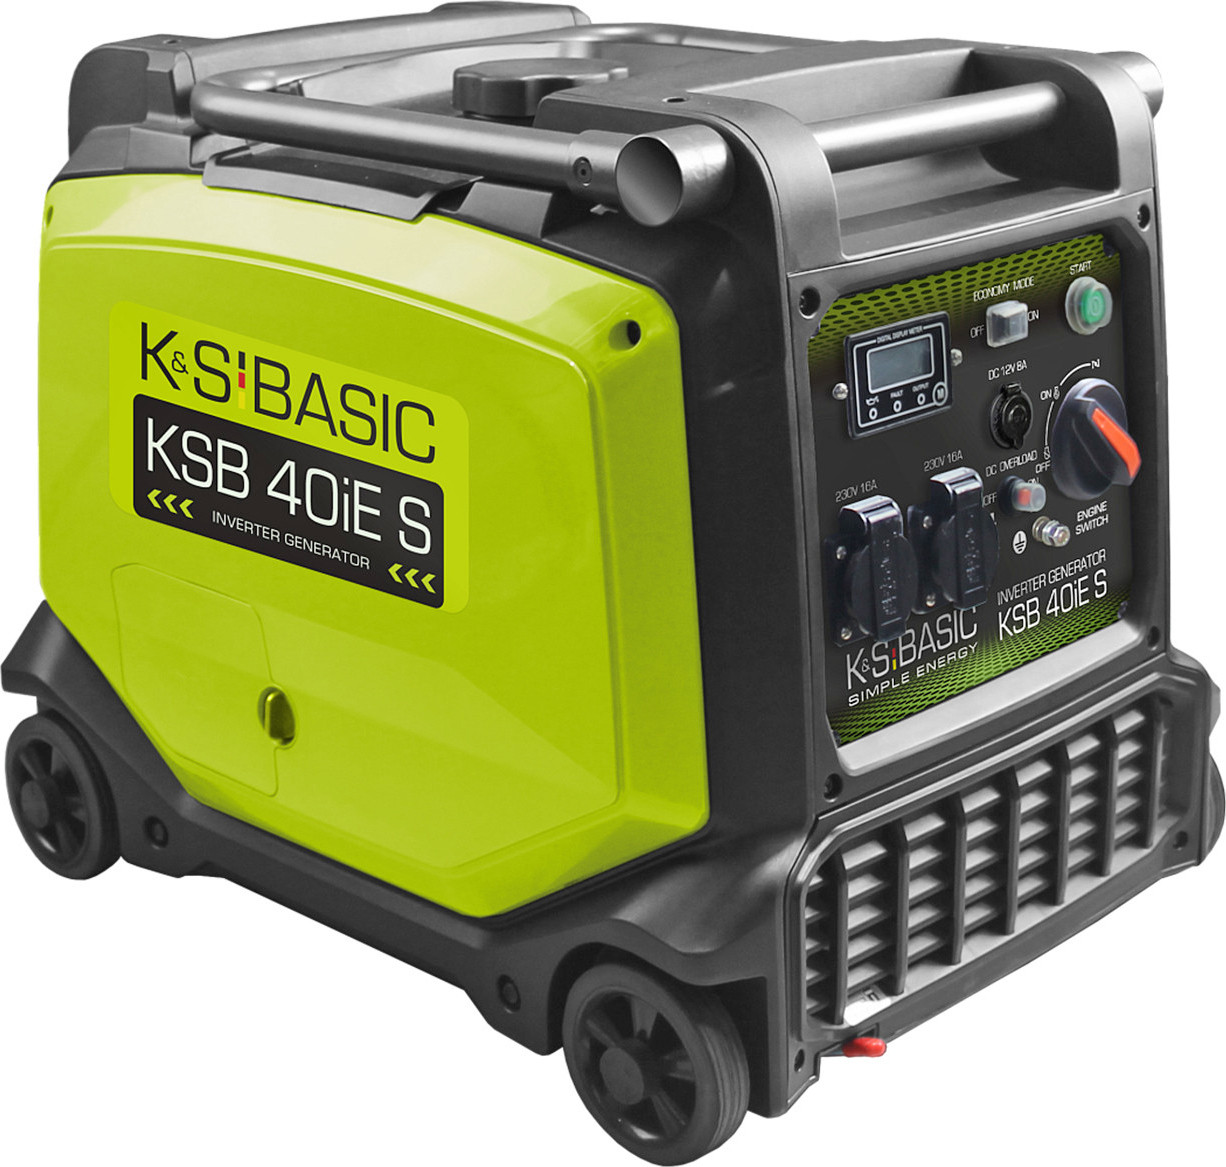 K&S BASIC KSB 40iE S - зображення 1